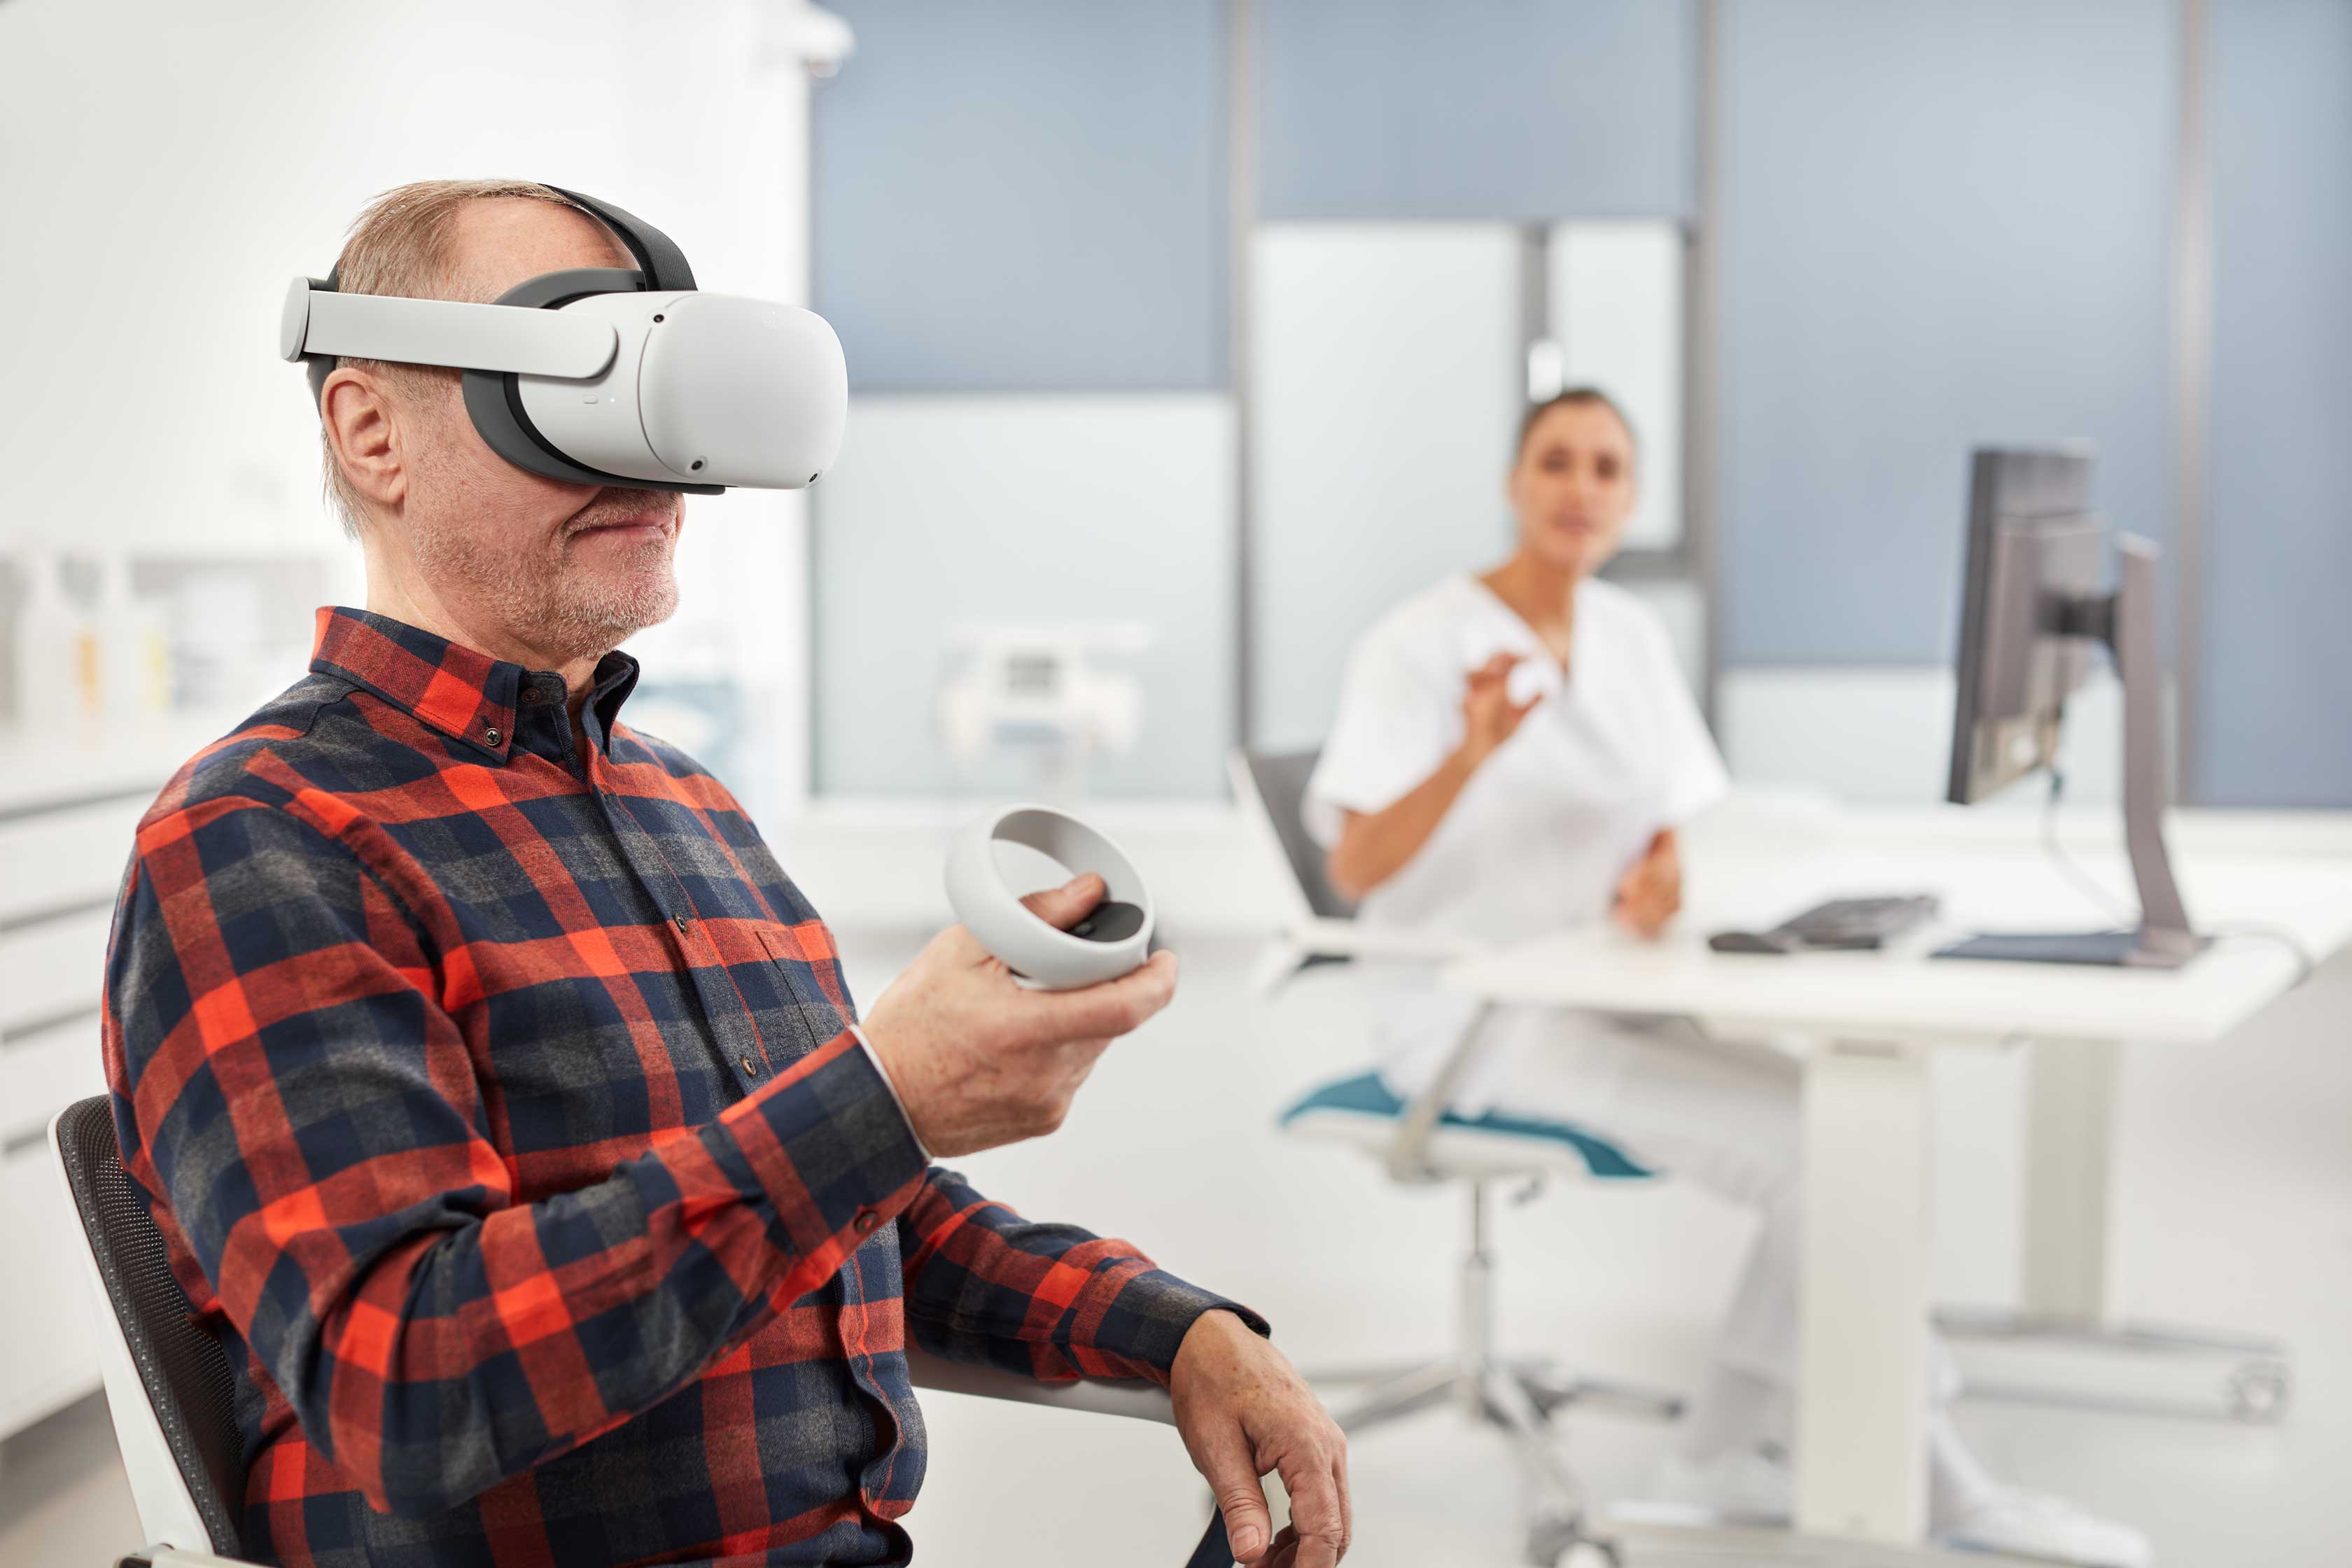 Mann mit Virtual-Reality-Brille